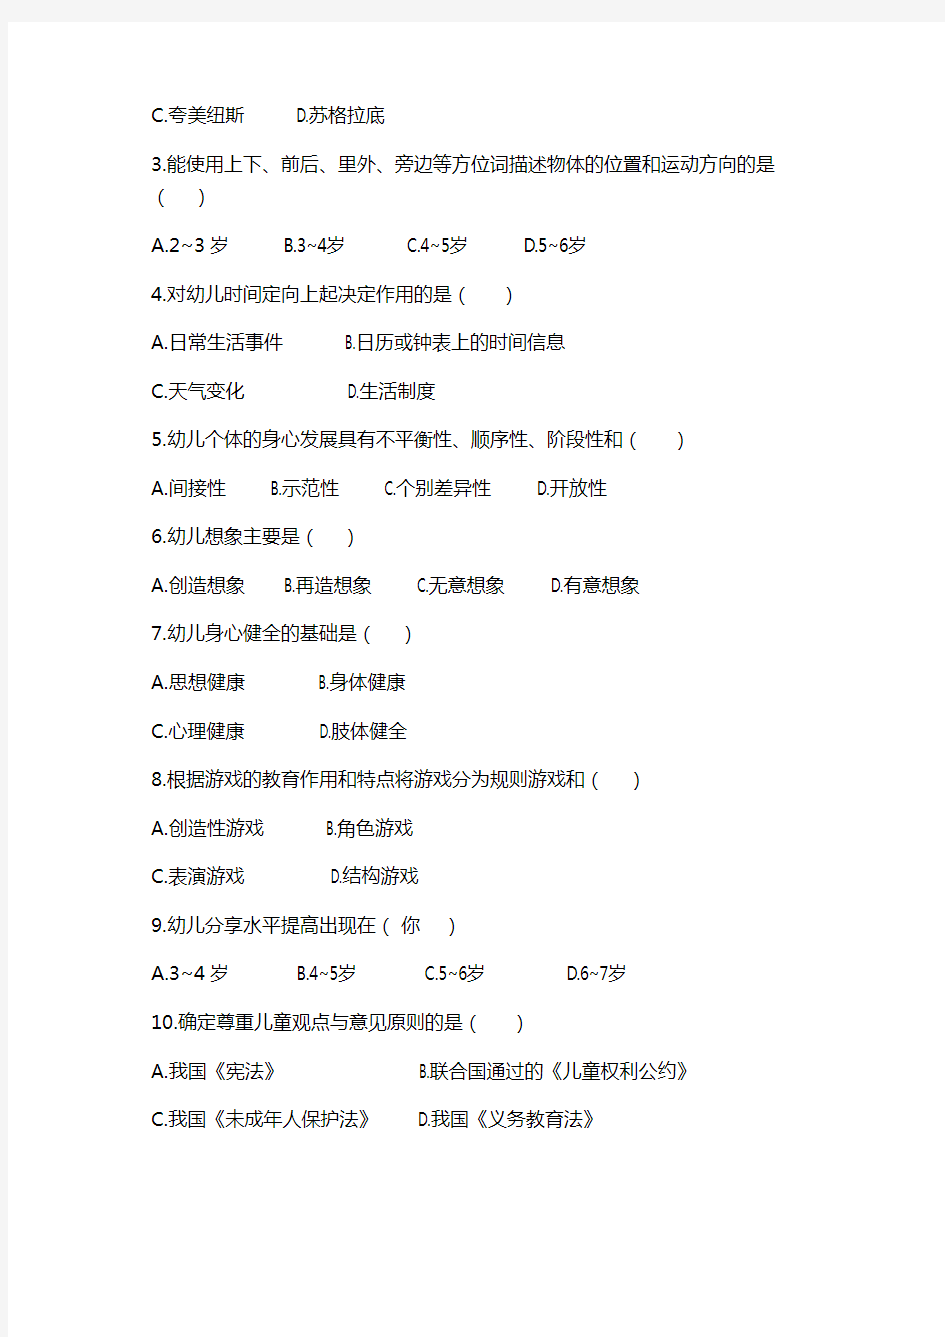 杭州市教育系统公开招聘教职工专业知识测试(2014年5月)幼儿教育专业试卷